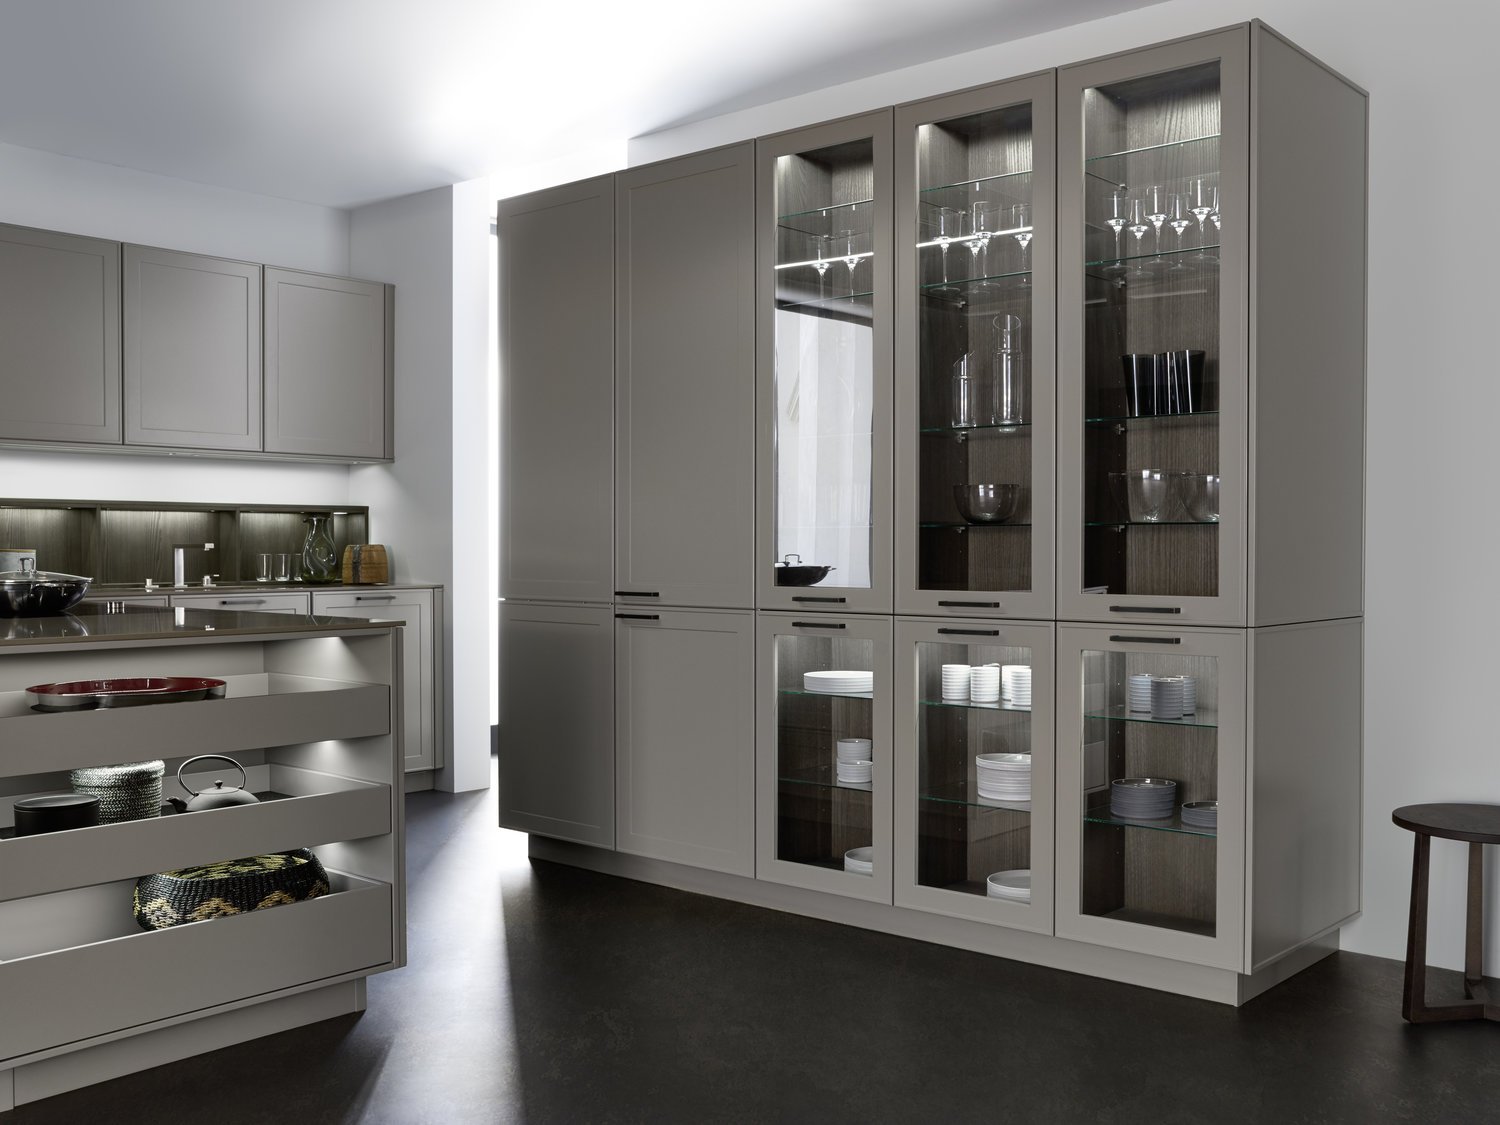 LEICHT VERVE-FS  TOPOS connaught kitchens storage cupboards.jpg